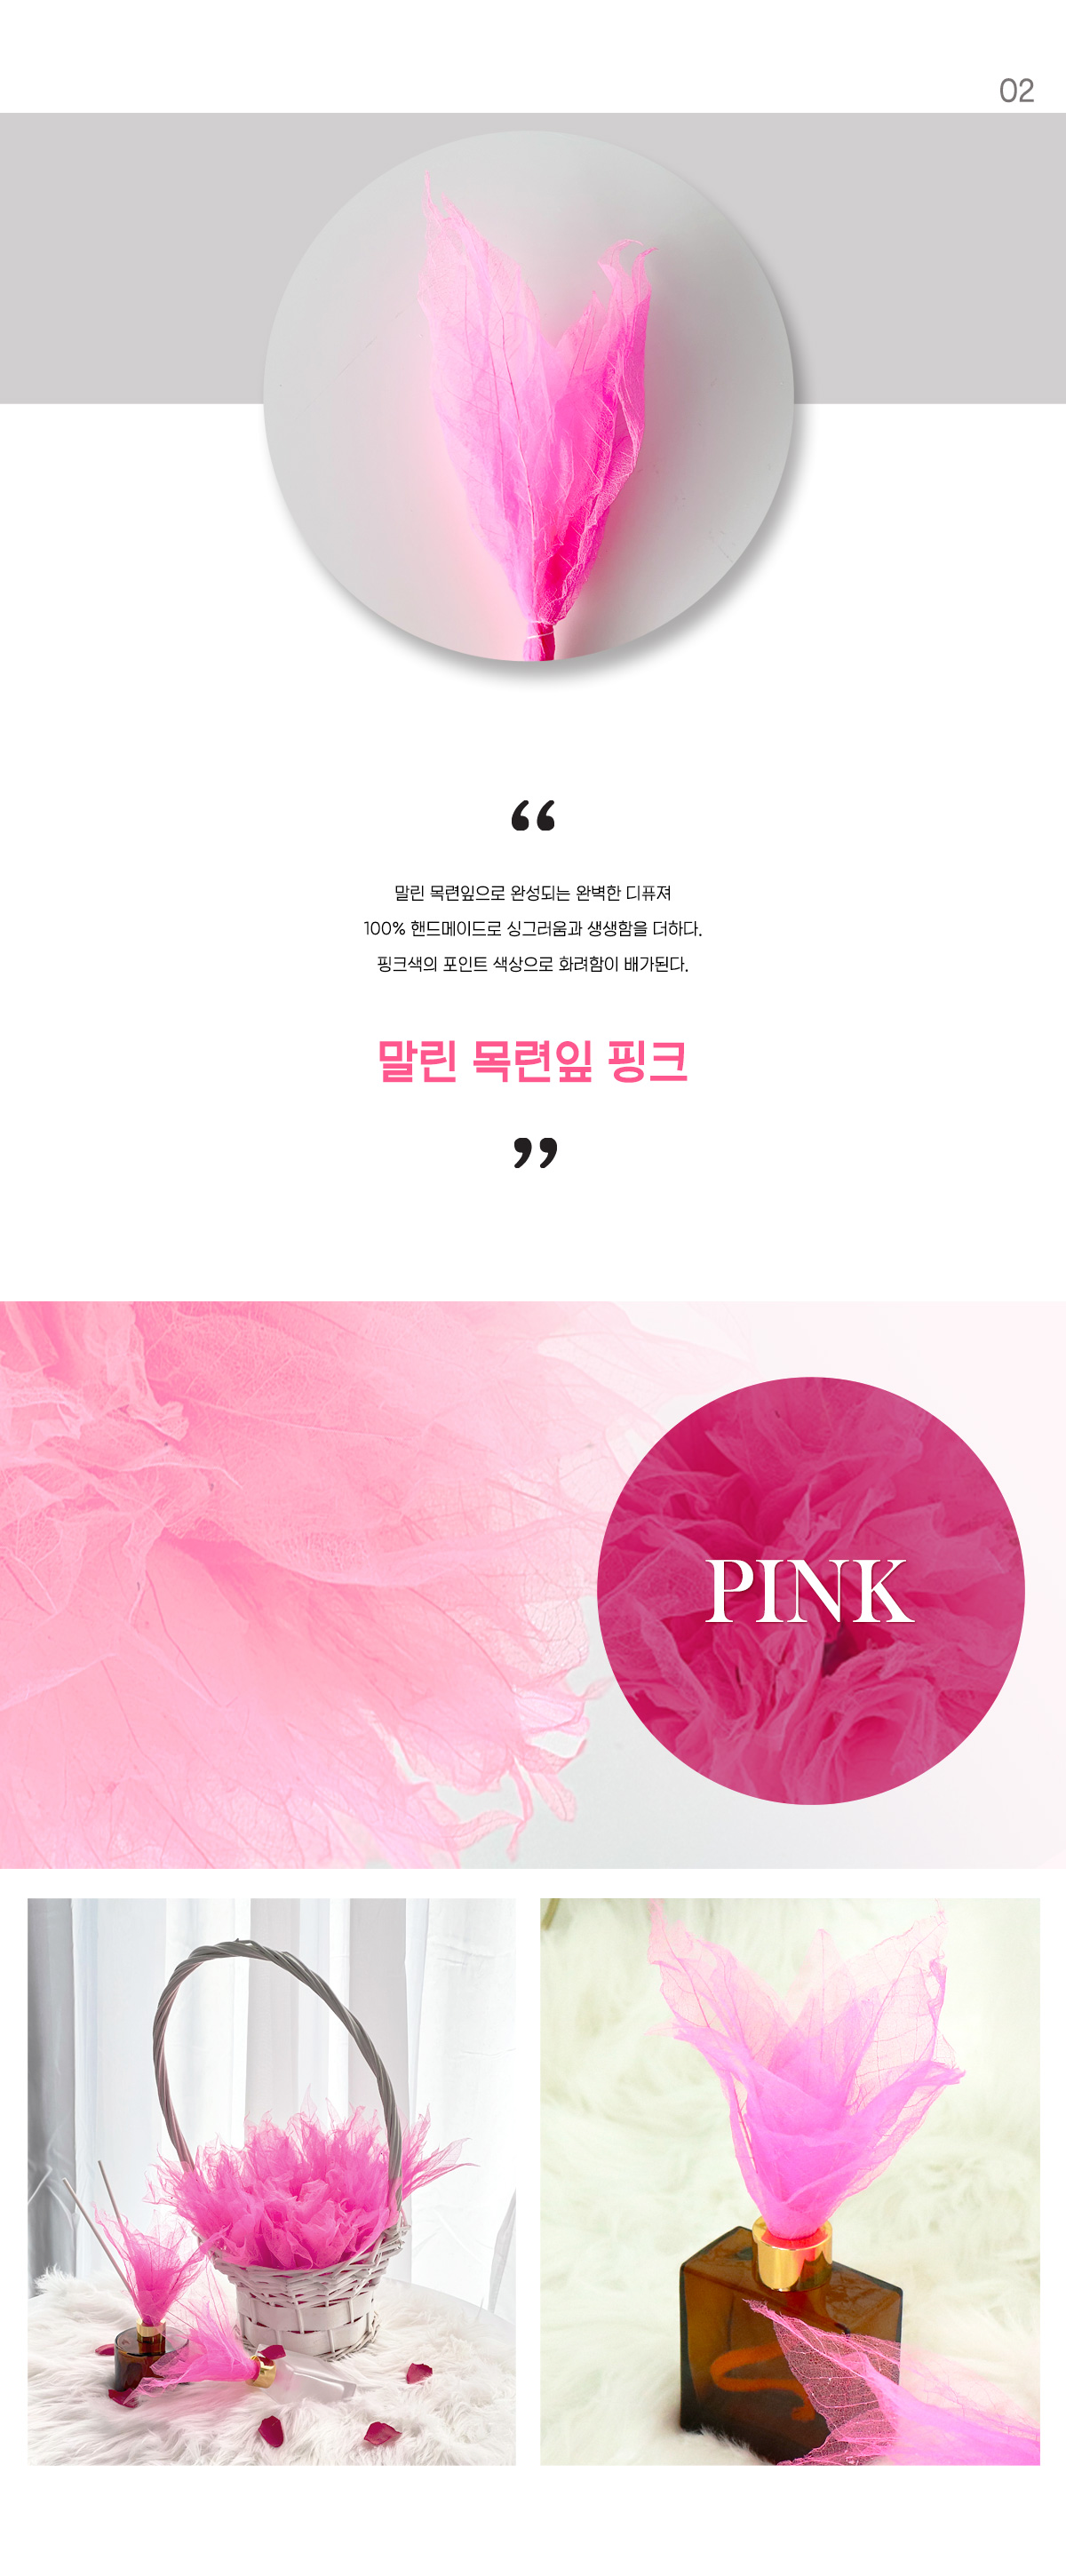 lead_magnolia_pink.jpg